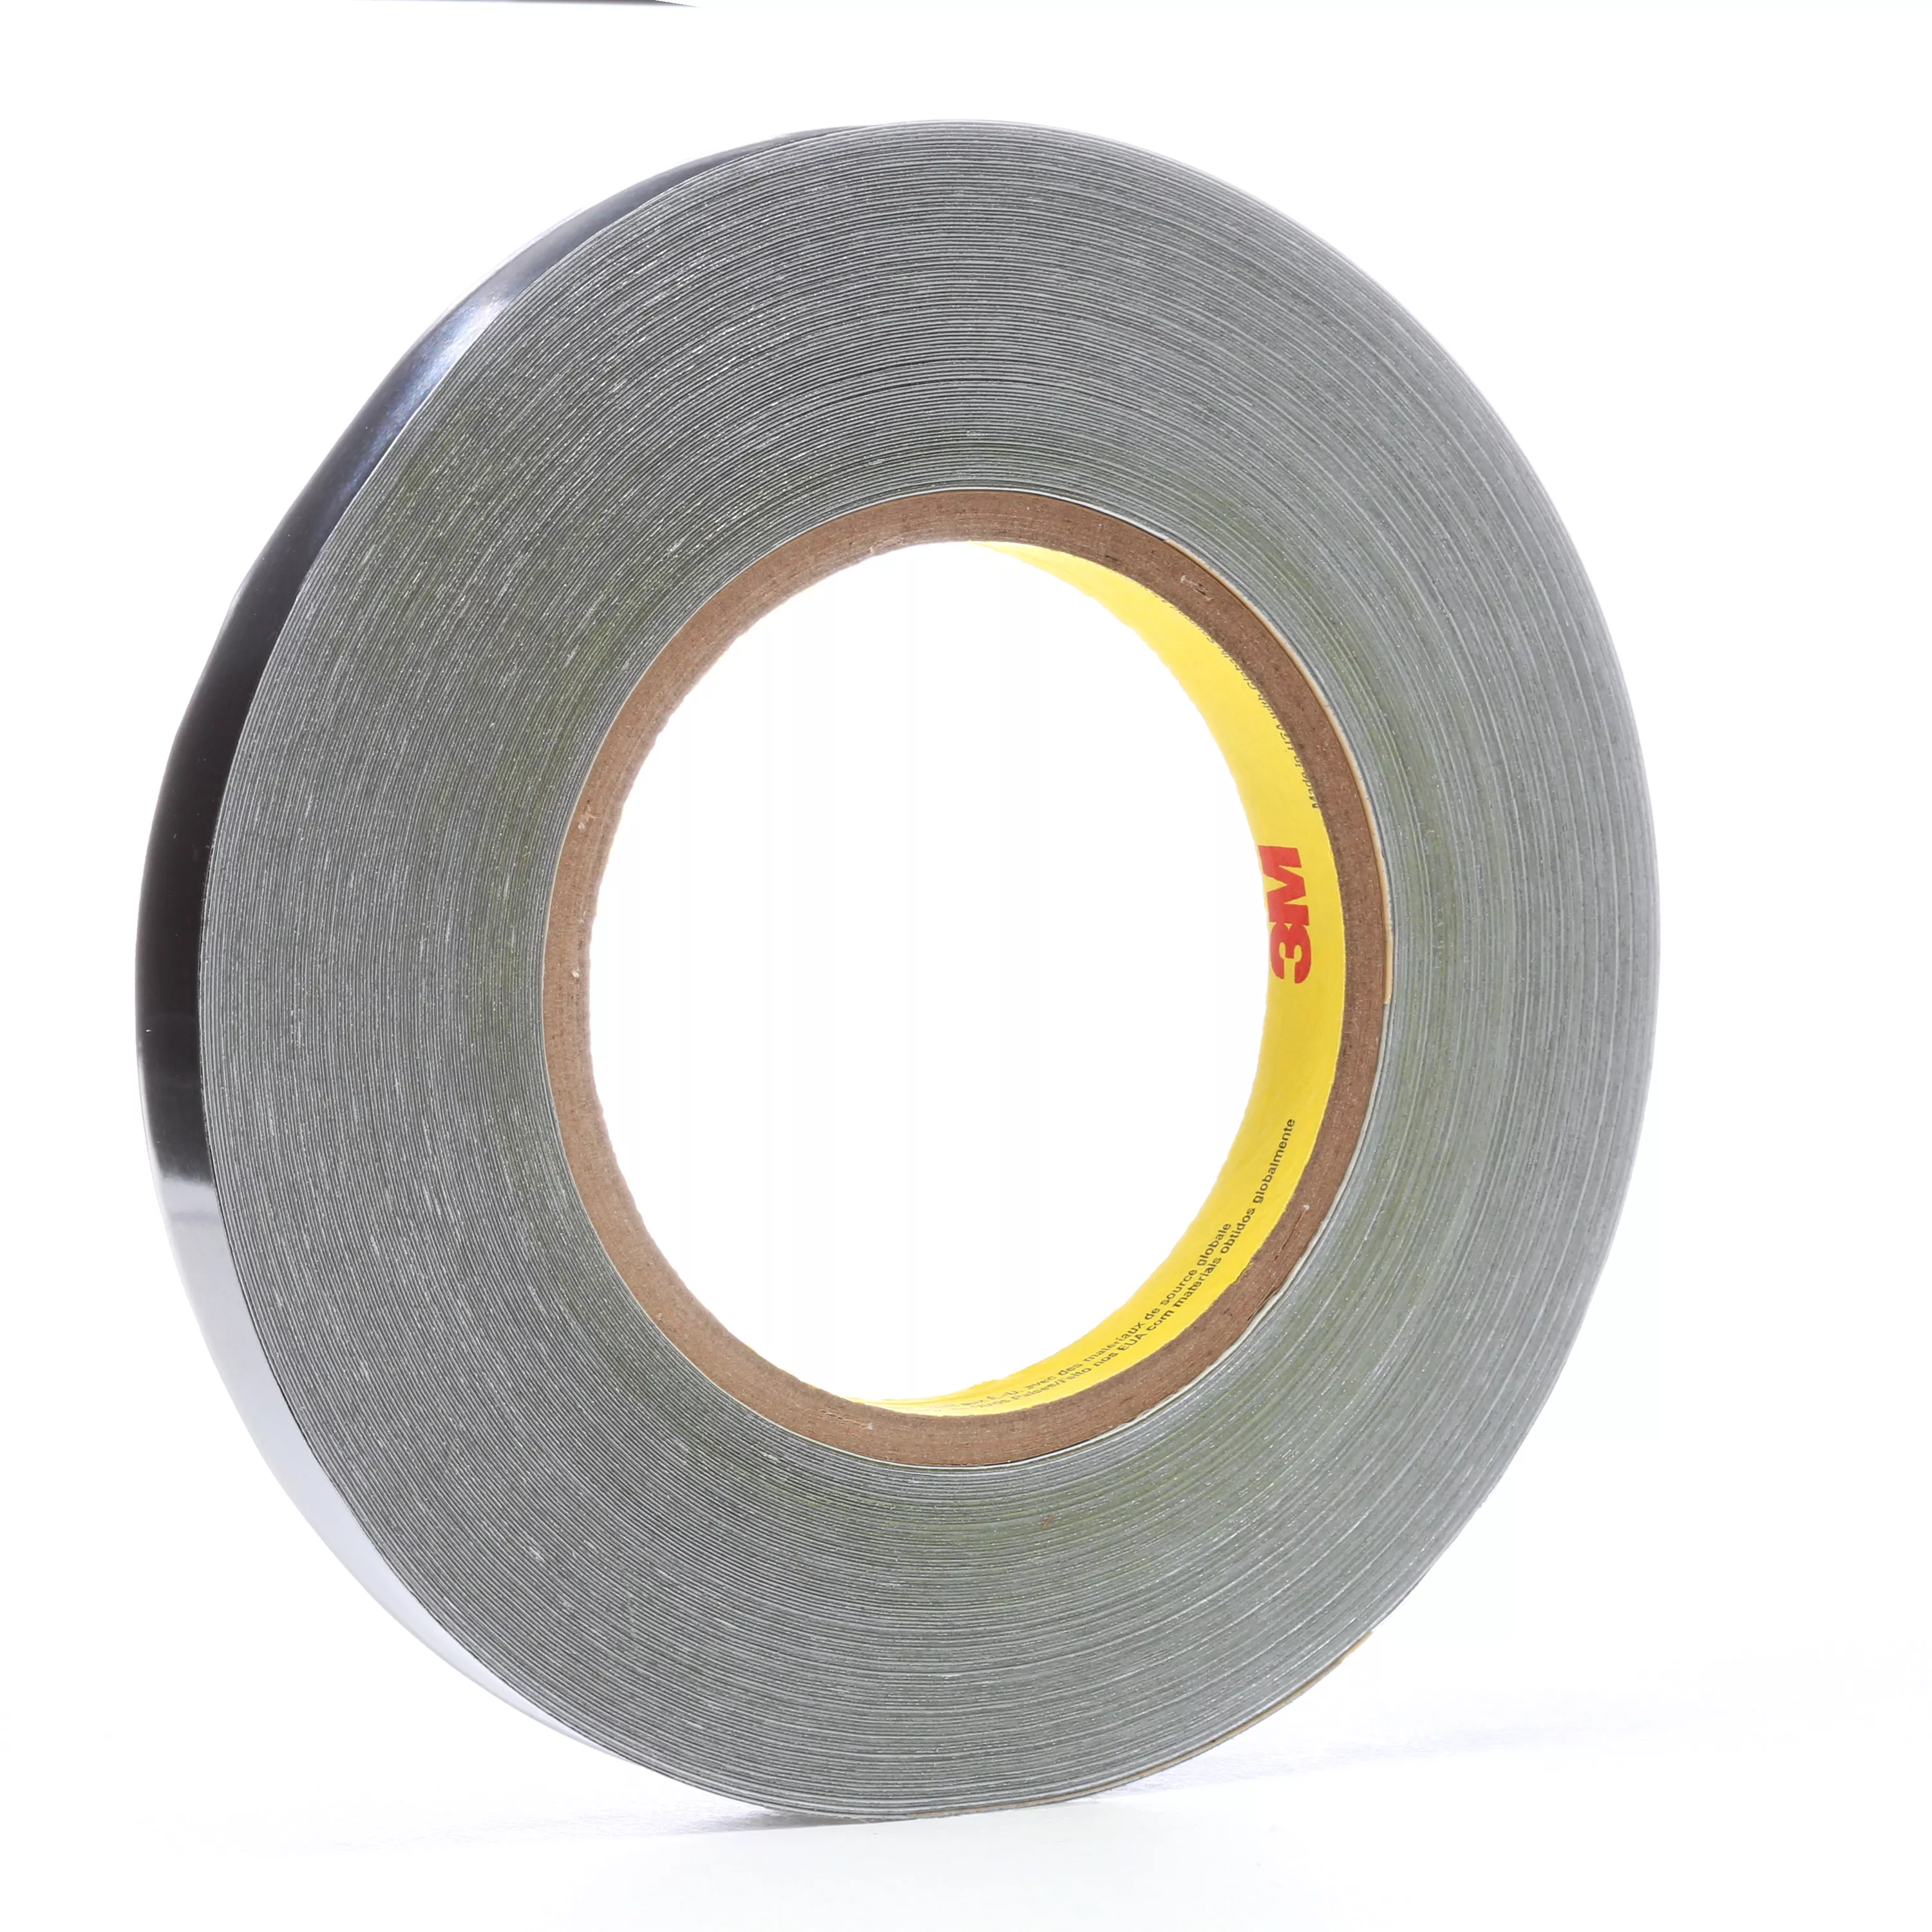 3M™ Lead Foil Tape 420, Dark Silver, 3/4 in x 36 yd, 6.8 mil, 12
Roll/Case